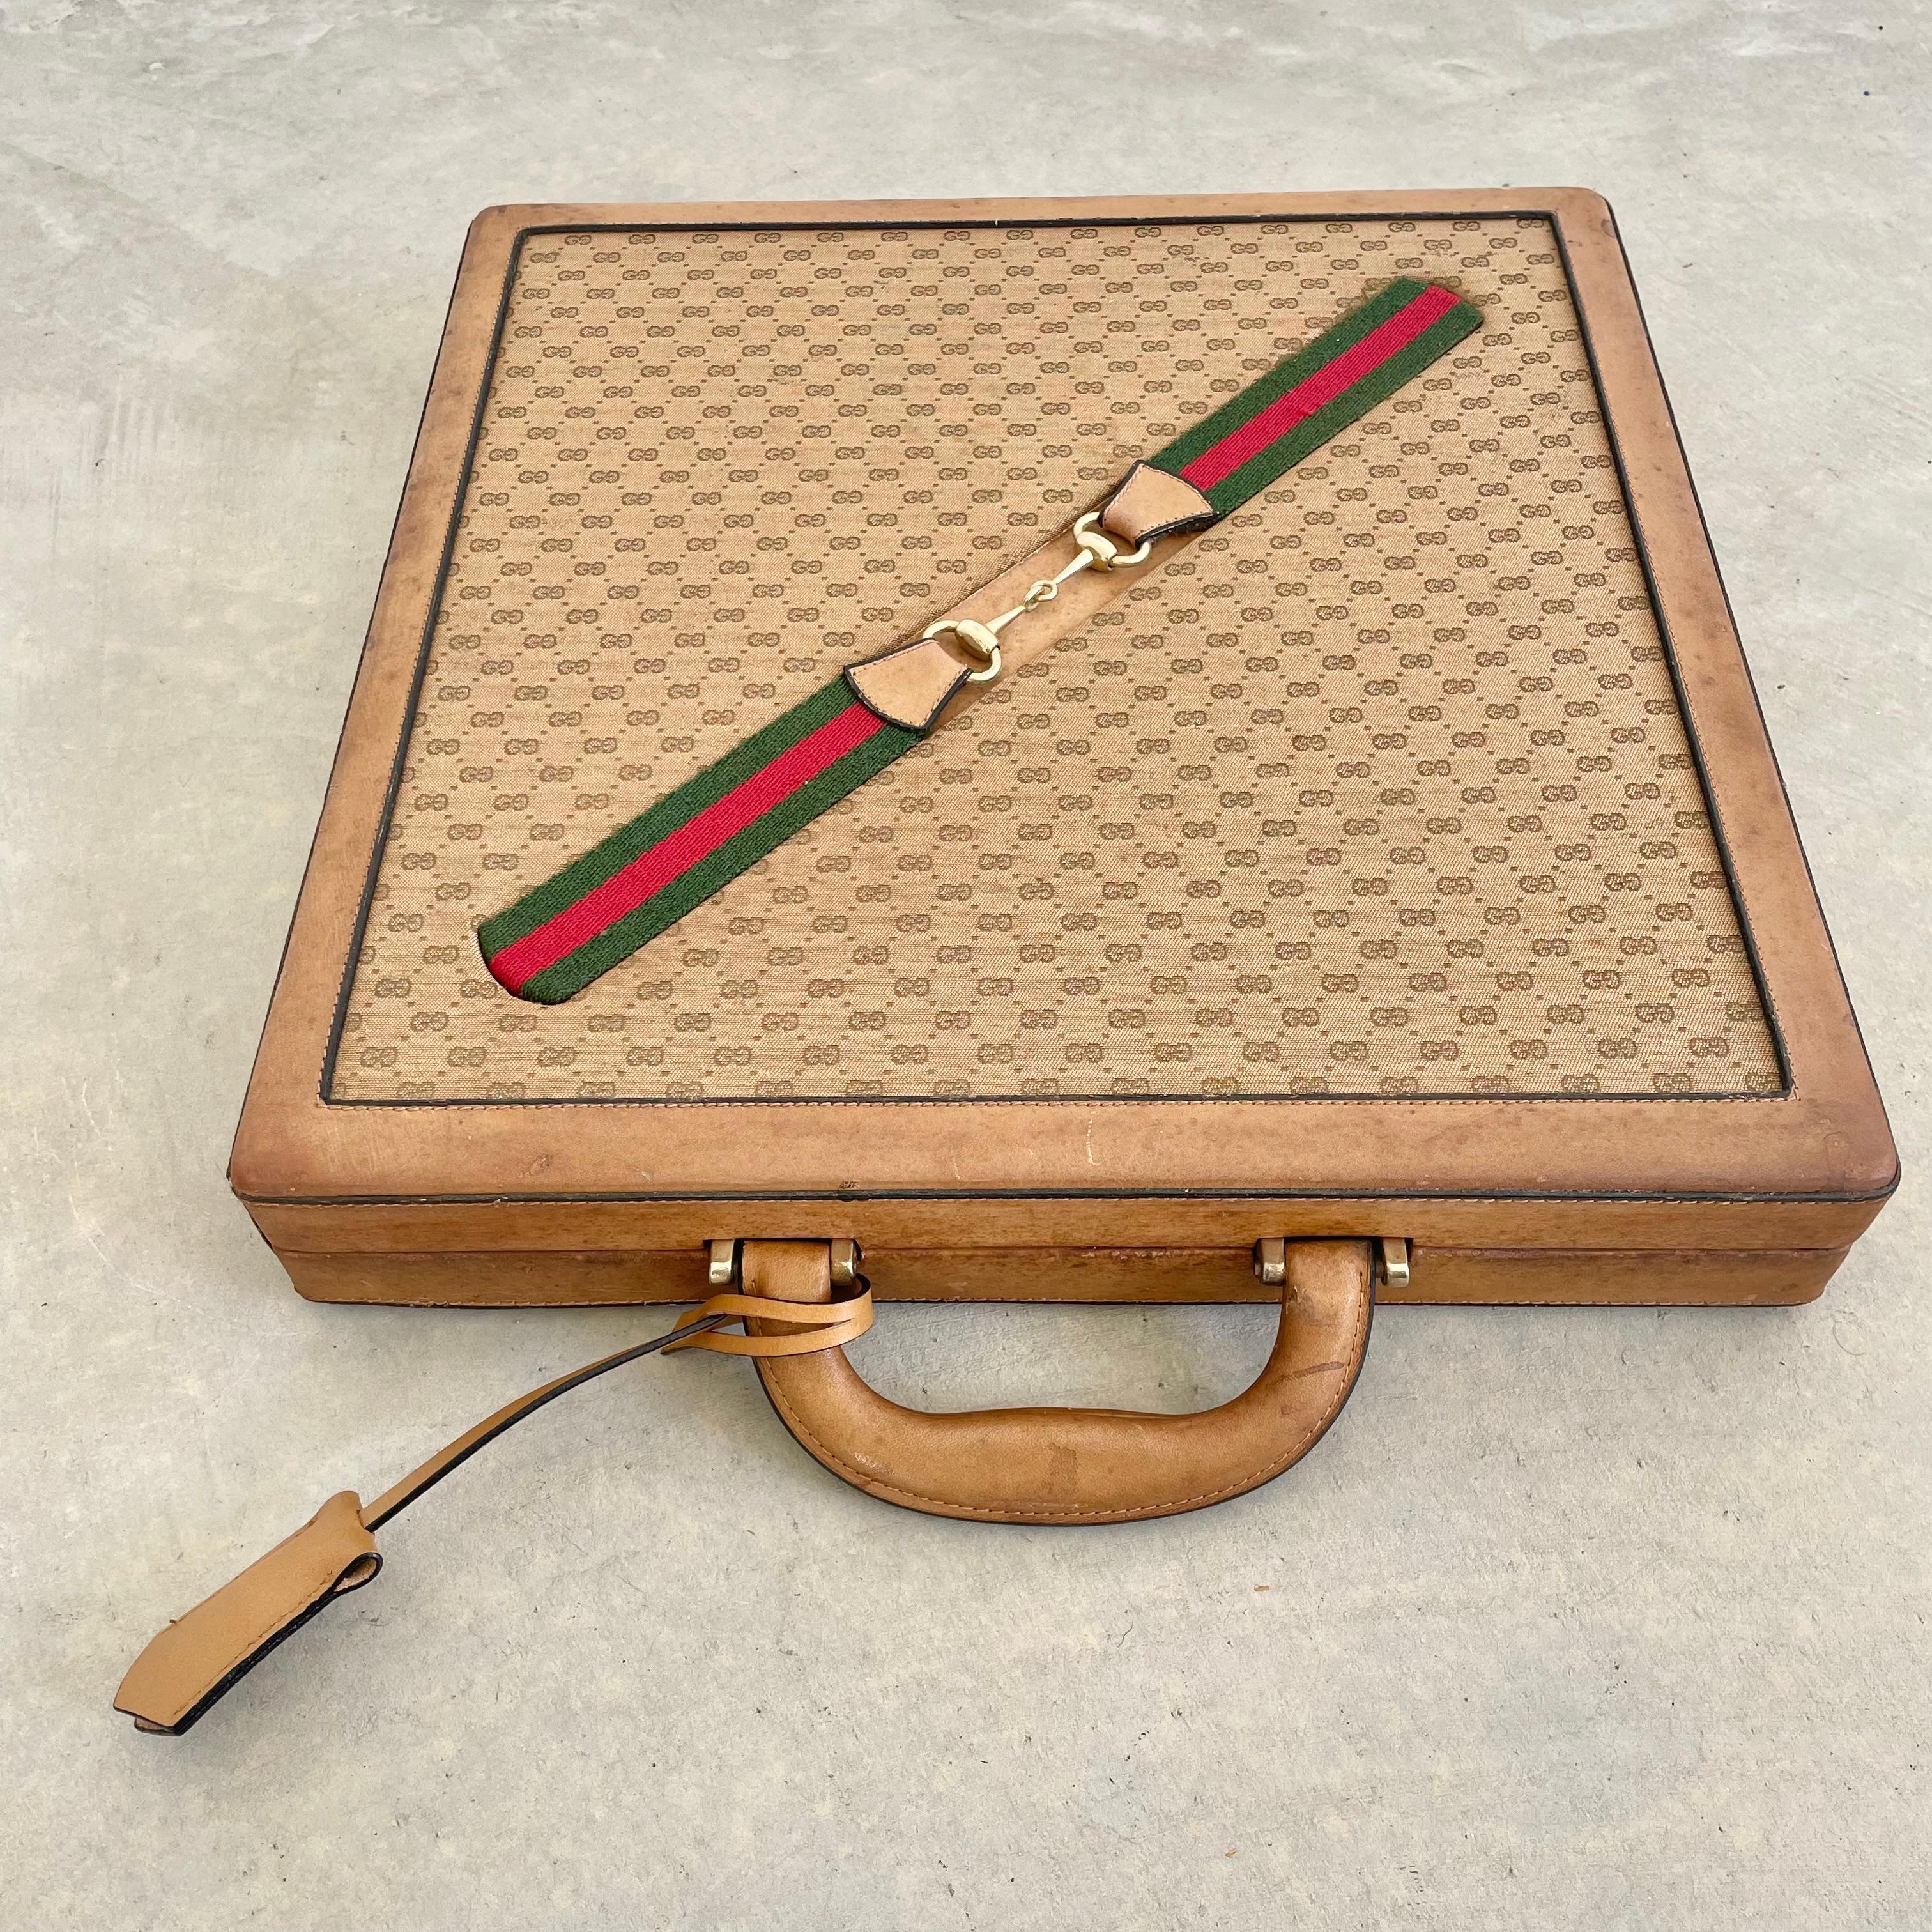 Vintage tragbare Gucci Leder Spielkoffer mit Schach, Dame und Backgammon. Holzgerahmtes Etui in eleganter Leinwand mit Lederakzenten eingewickelt. Das Segeltuch zeigt eine sich wiederholende Sequenz des ineinander greifenden Gucci-Motivs 